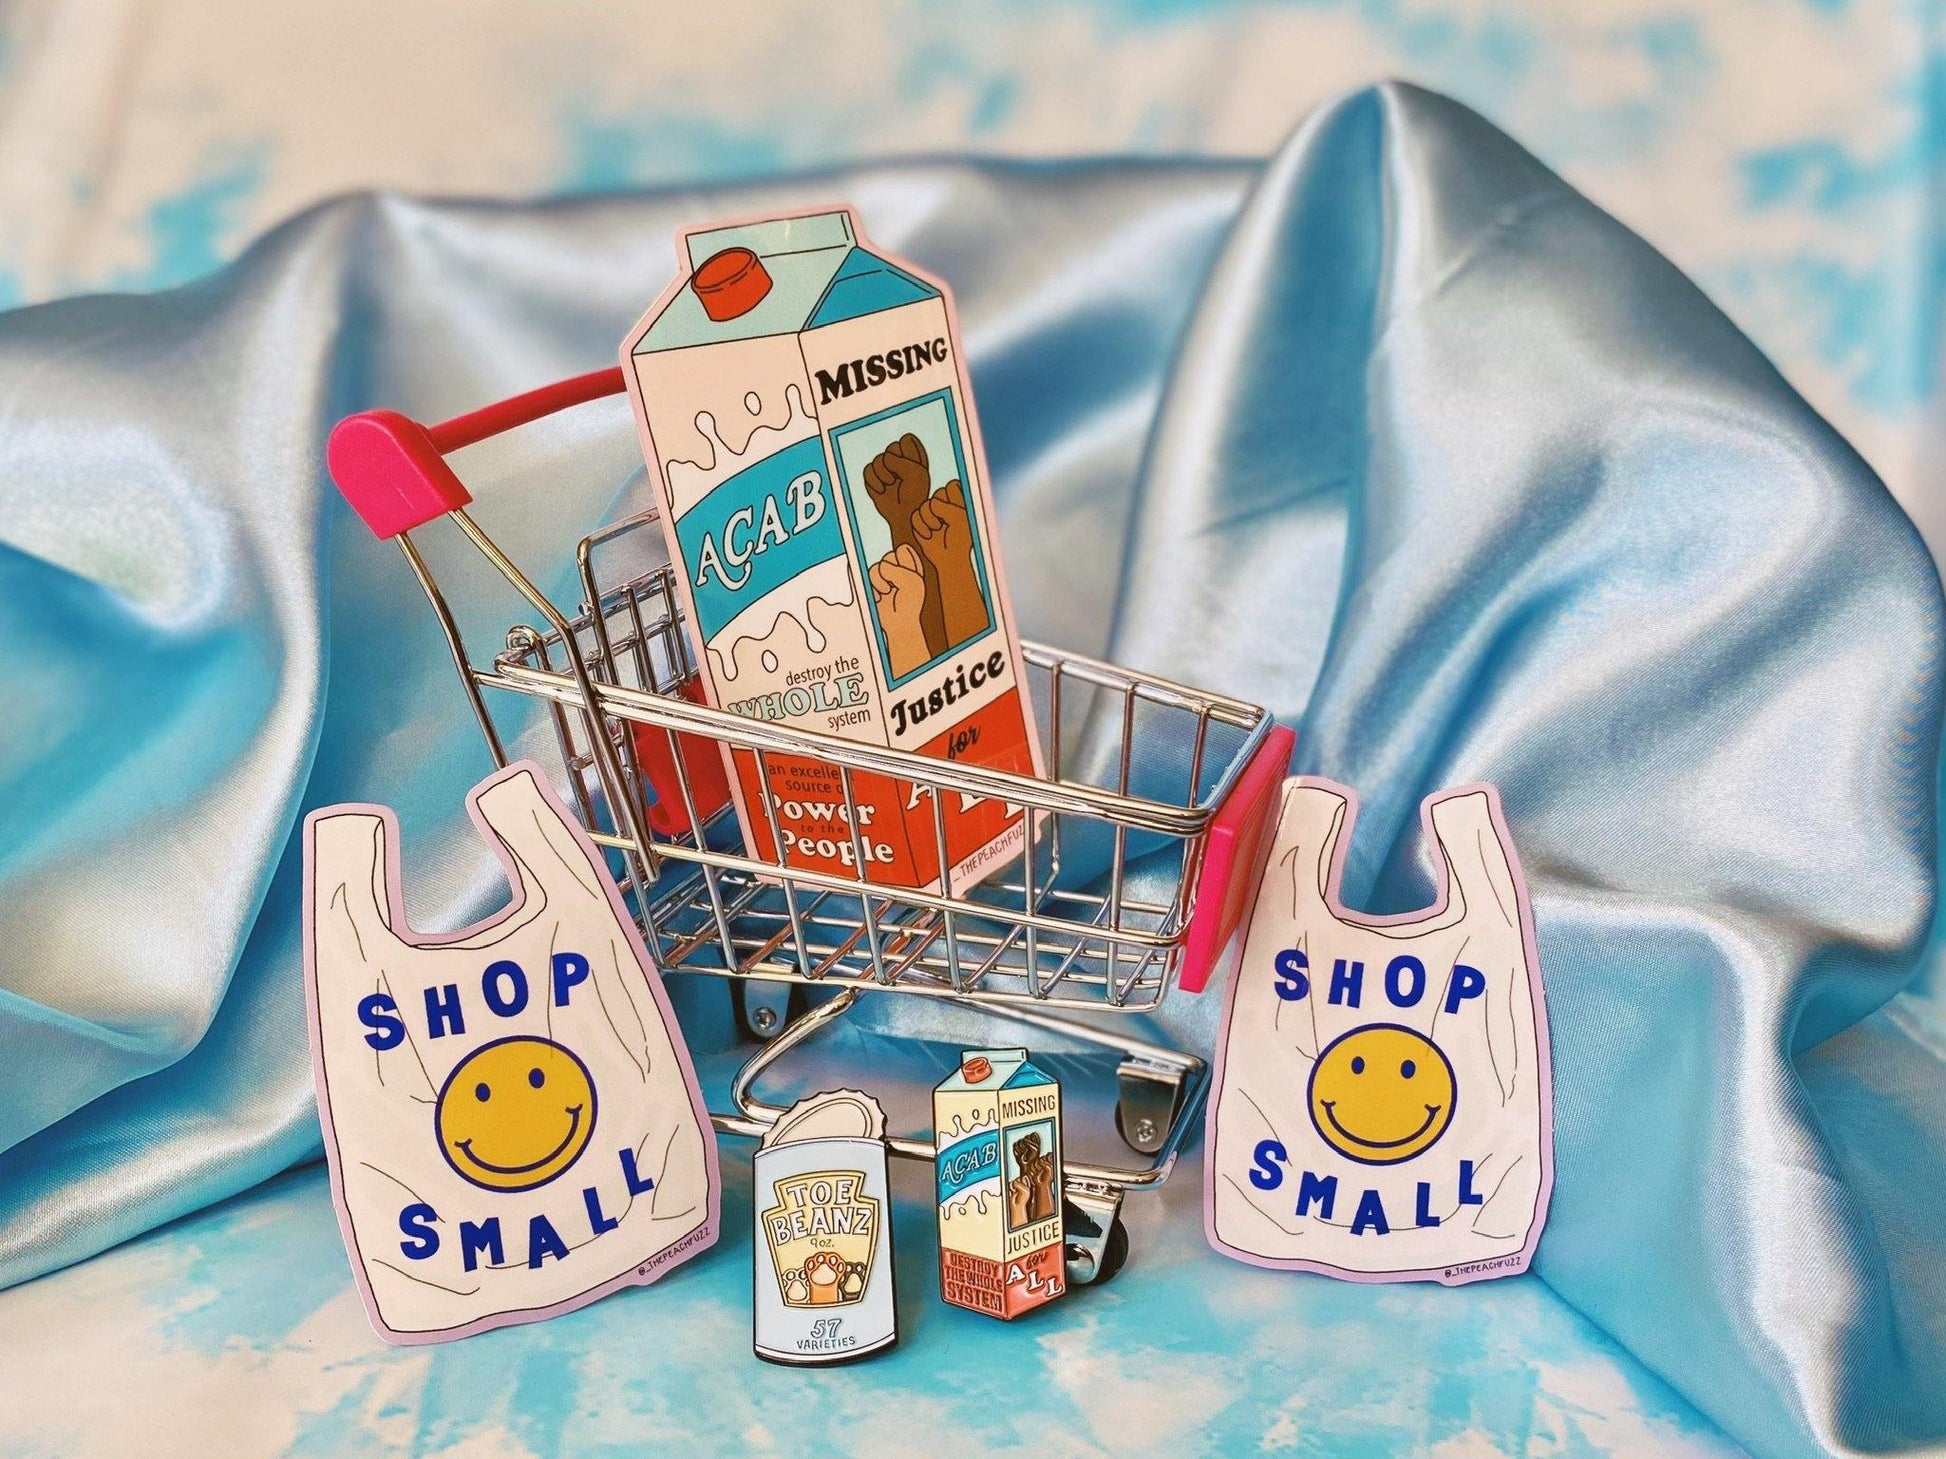 Shop Small Sticker - The Peach Fuzz